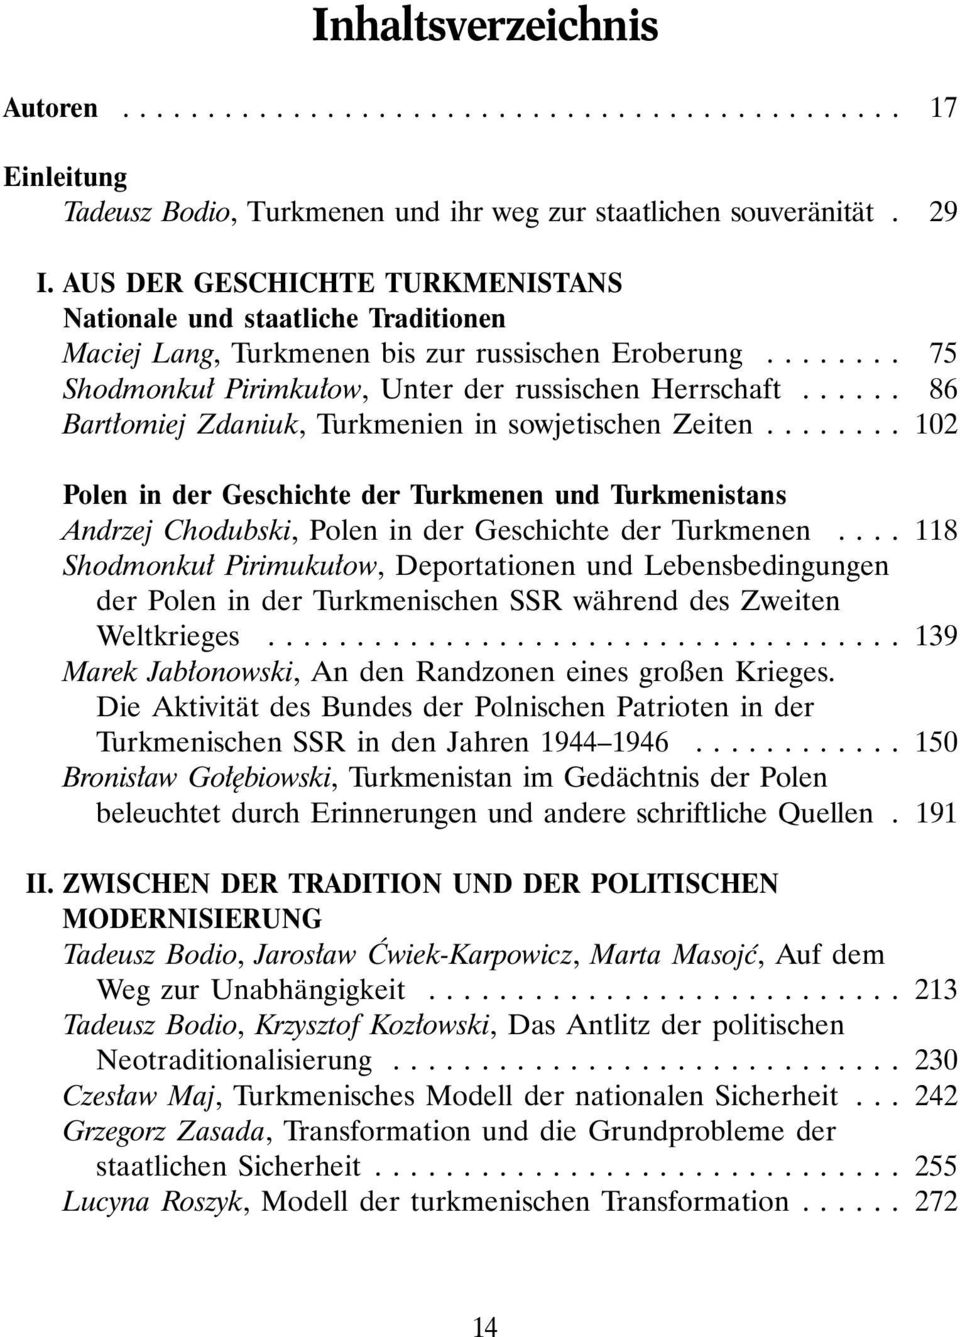 ..... 86 Bart omiej Zdaniuk, Turkmenien in sowjetischen Zeiten........ 102 Polen in der Geschichte der Turkmenen und Turkmenistans Andrzej Chodubski, Polen in der Geschichte der Turkmenen.